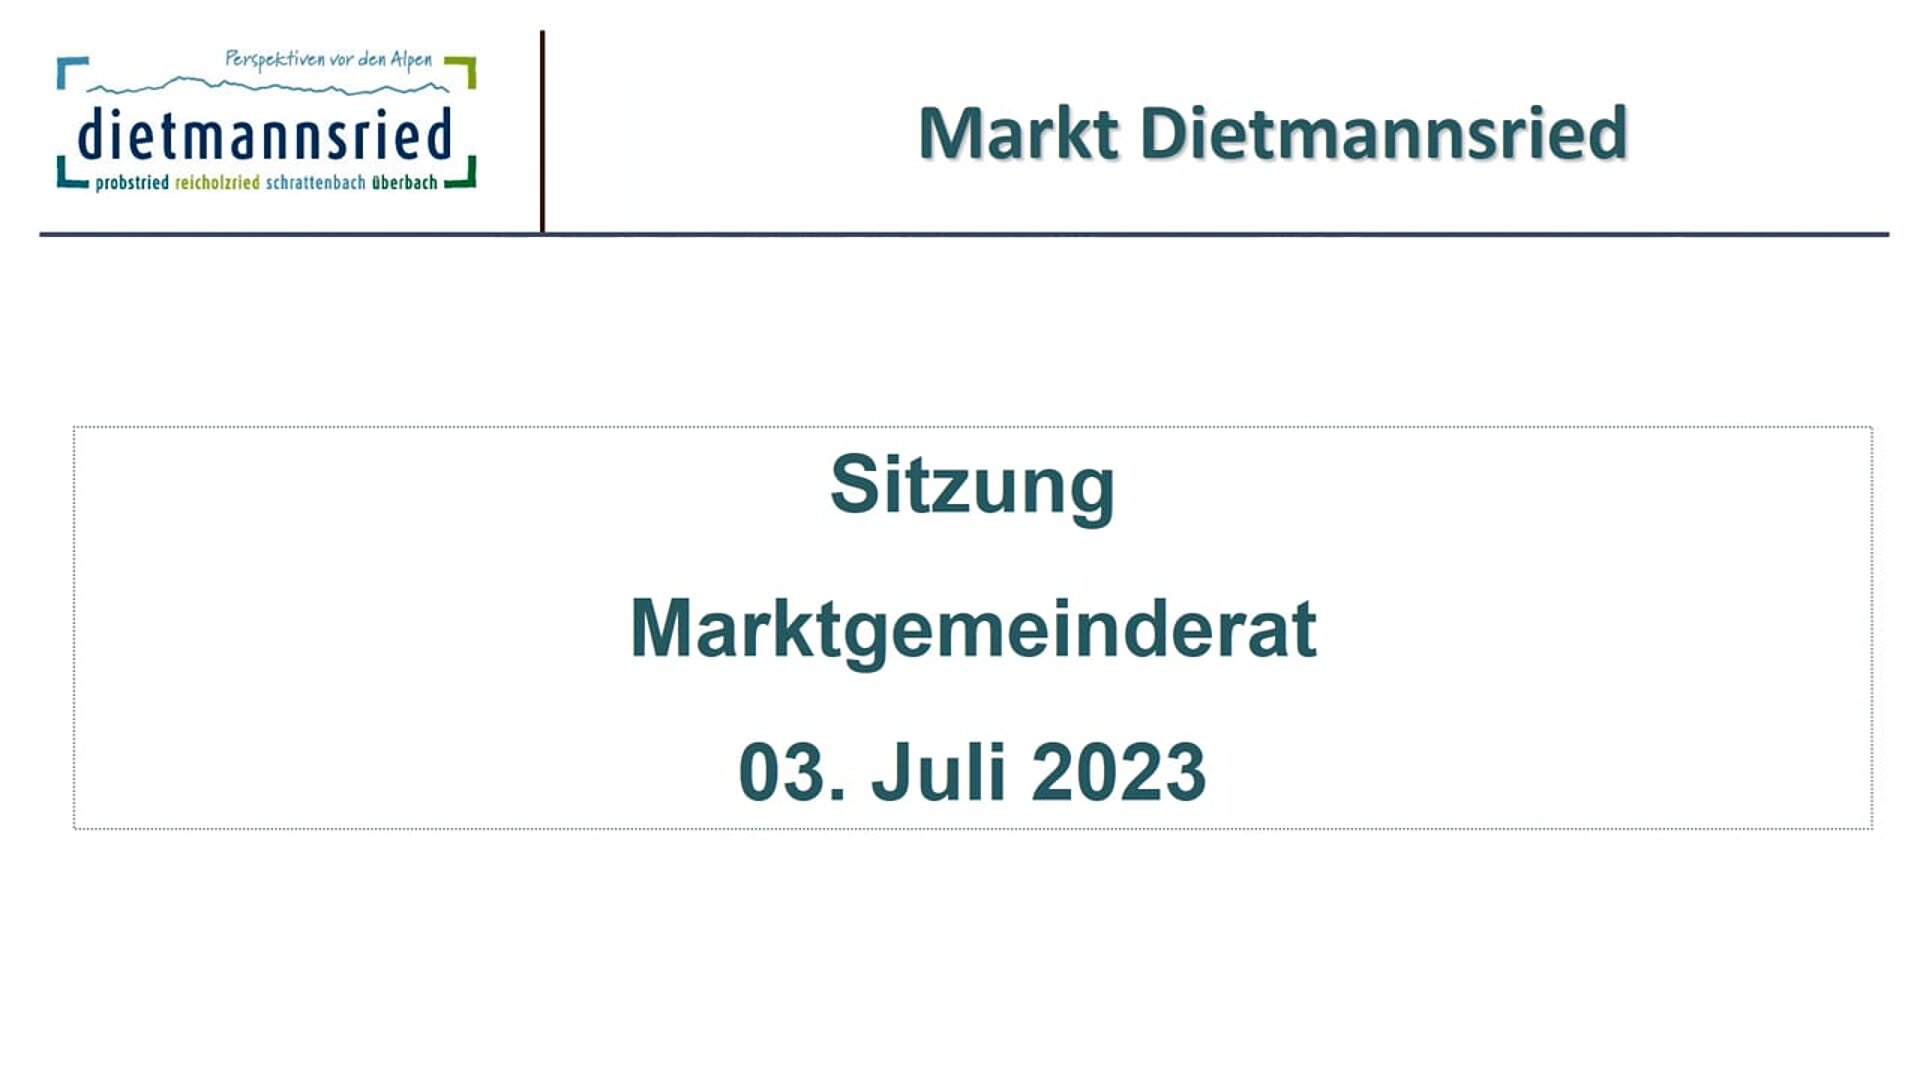 Sitzung Marktgemeinderat vom 03. Juli 2023